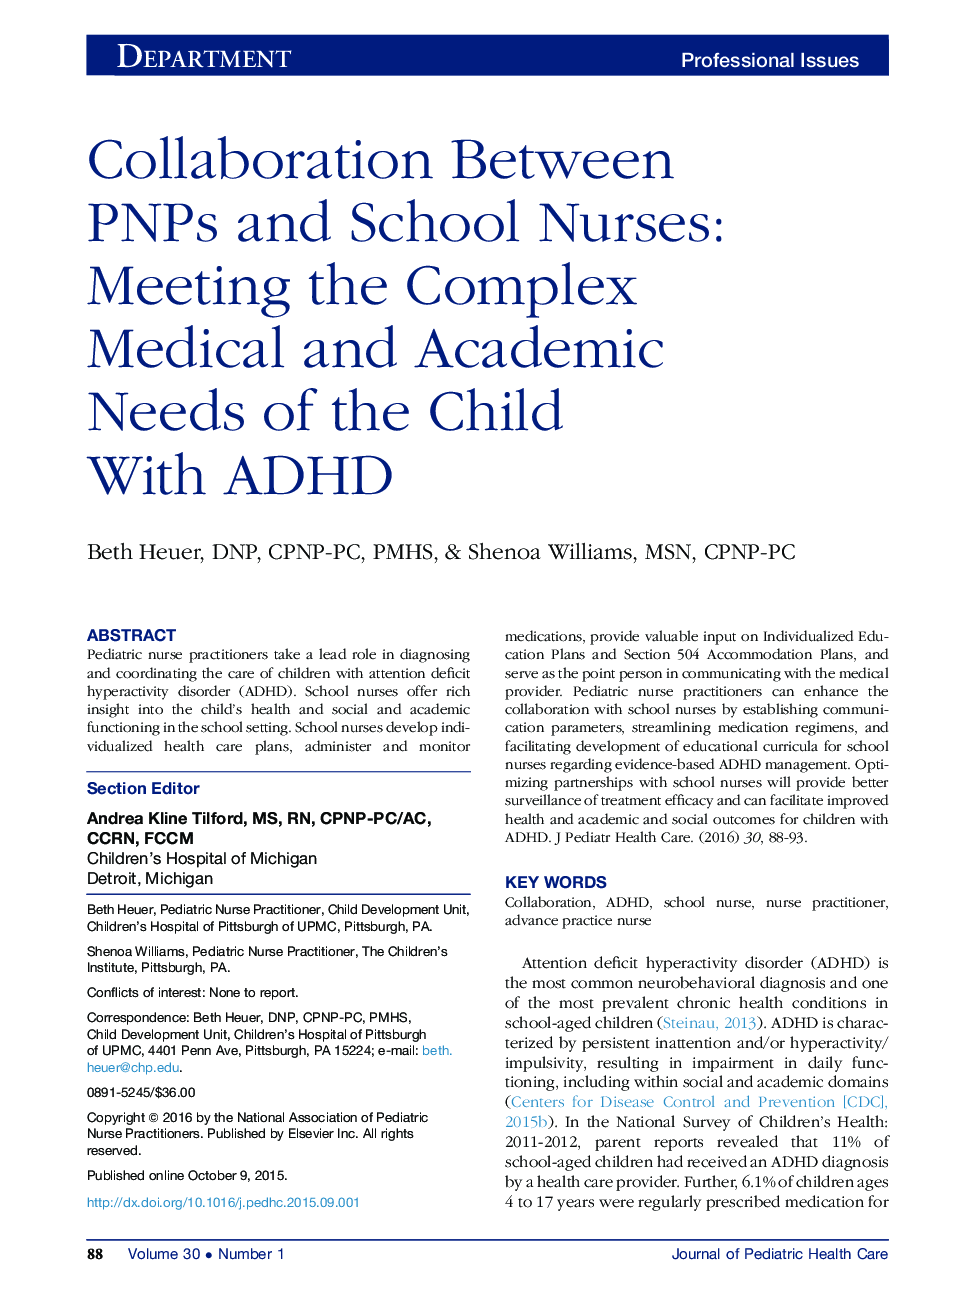 همکاری بین PNP و پرستاران مدرسه: نشست نیازهای پزشکی و آموزشی مجتمع کودکان مبتلا به ADHD